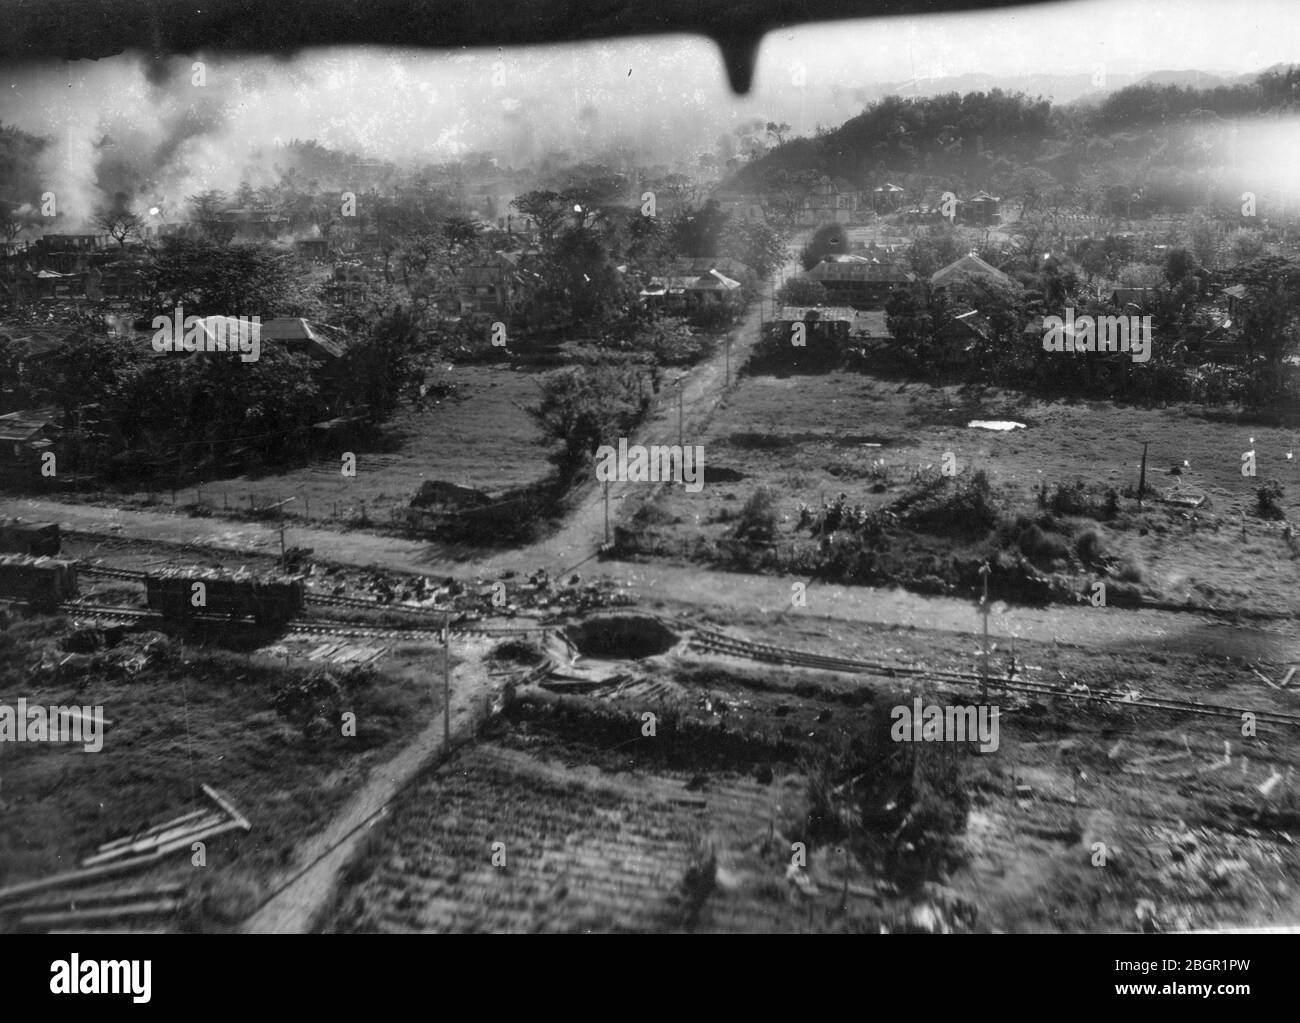 Bomben fallen # 2. Armee Luftwaffe fliegt Bombenangriffe über die hügelige Stadt San Fernando, die Philippinen, c. 1945. Dieser Blick nach hinten folgt dem vorherigen Foto, das die Landschaft etwa 100 Meter weiter vom Dorf zeigt. Diese Luftaufnahme zeigt zahlreiche Bombenkrater, darunter einen perfekten direkten Treffer auf den Eisenbahnschienen der Stadt. Mehr Staub und Rauch steigen vom Boden auf, wo Bomben getroffen haben. Um meine anderen WW II-bezogenen Bilder zu sehen, Suche: Prestor Vintage WW II Stockfoto